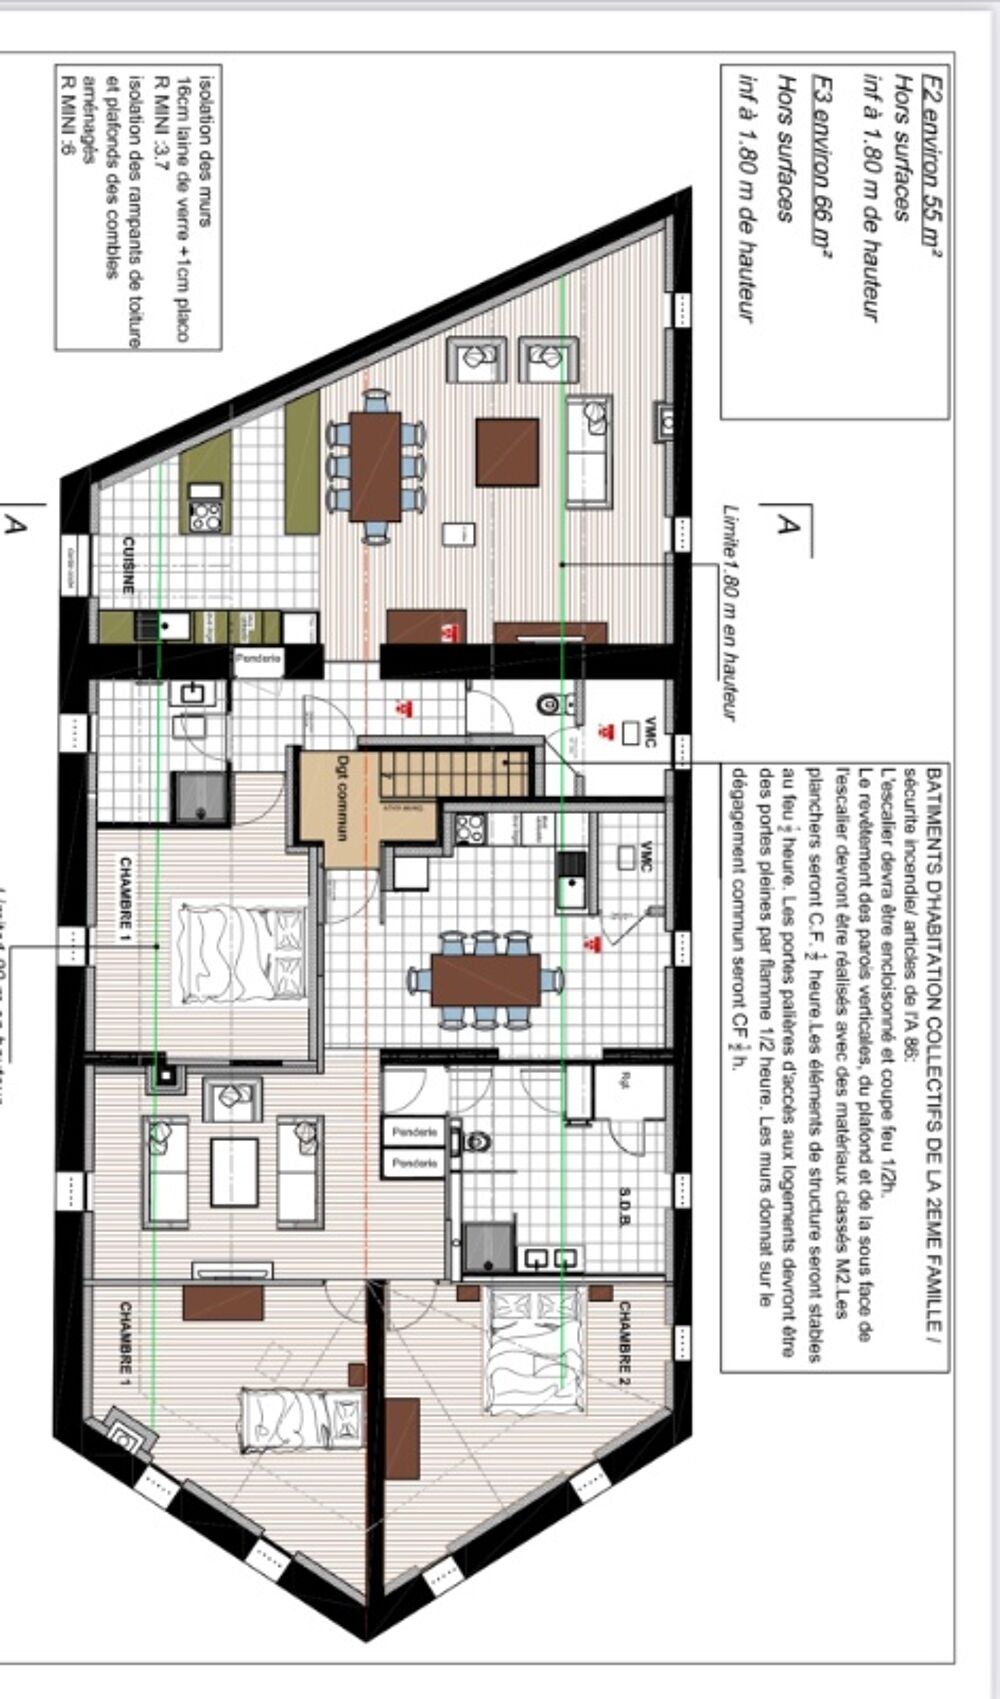 Vente Appartement Plateau  amnager / F2 55 m2 environ La ricamarie